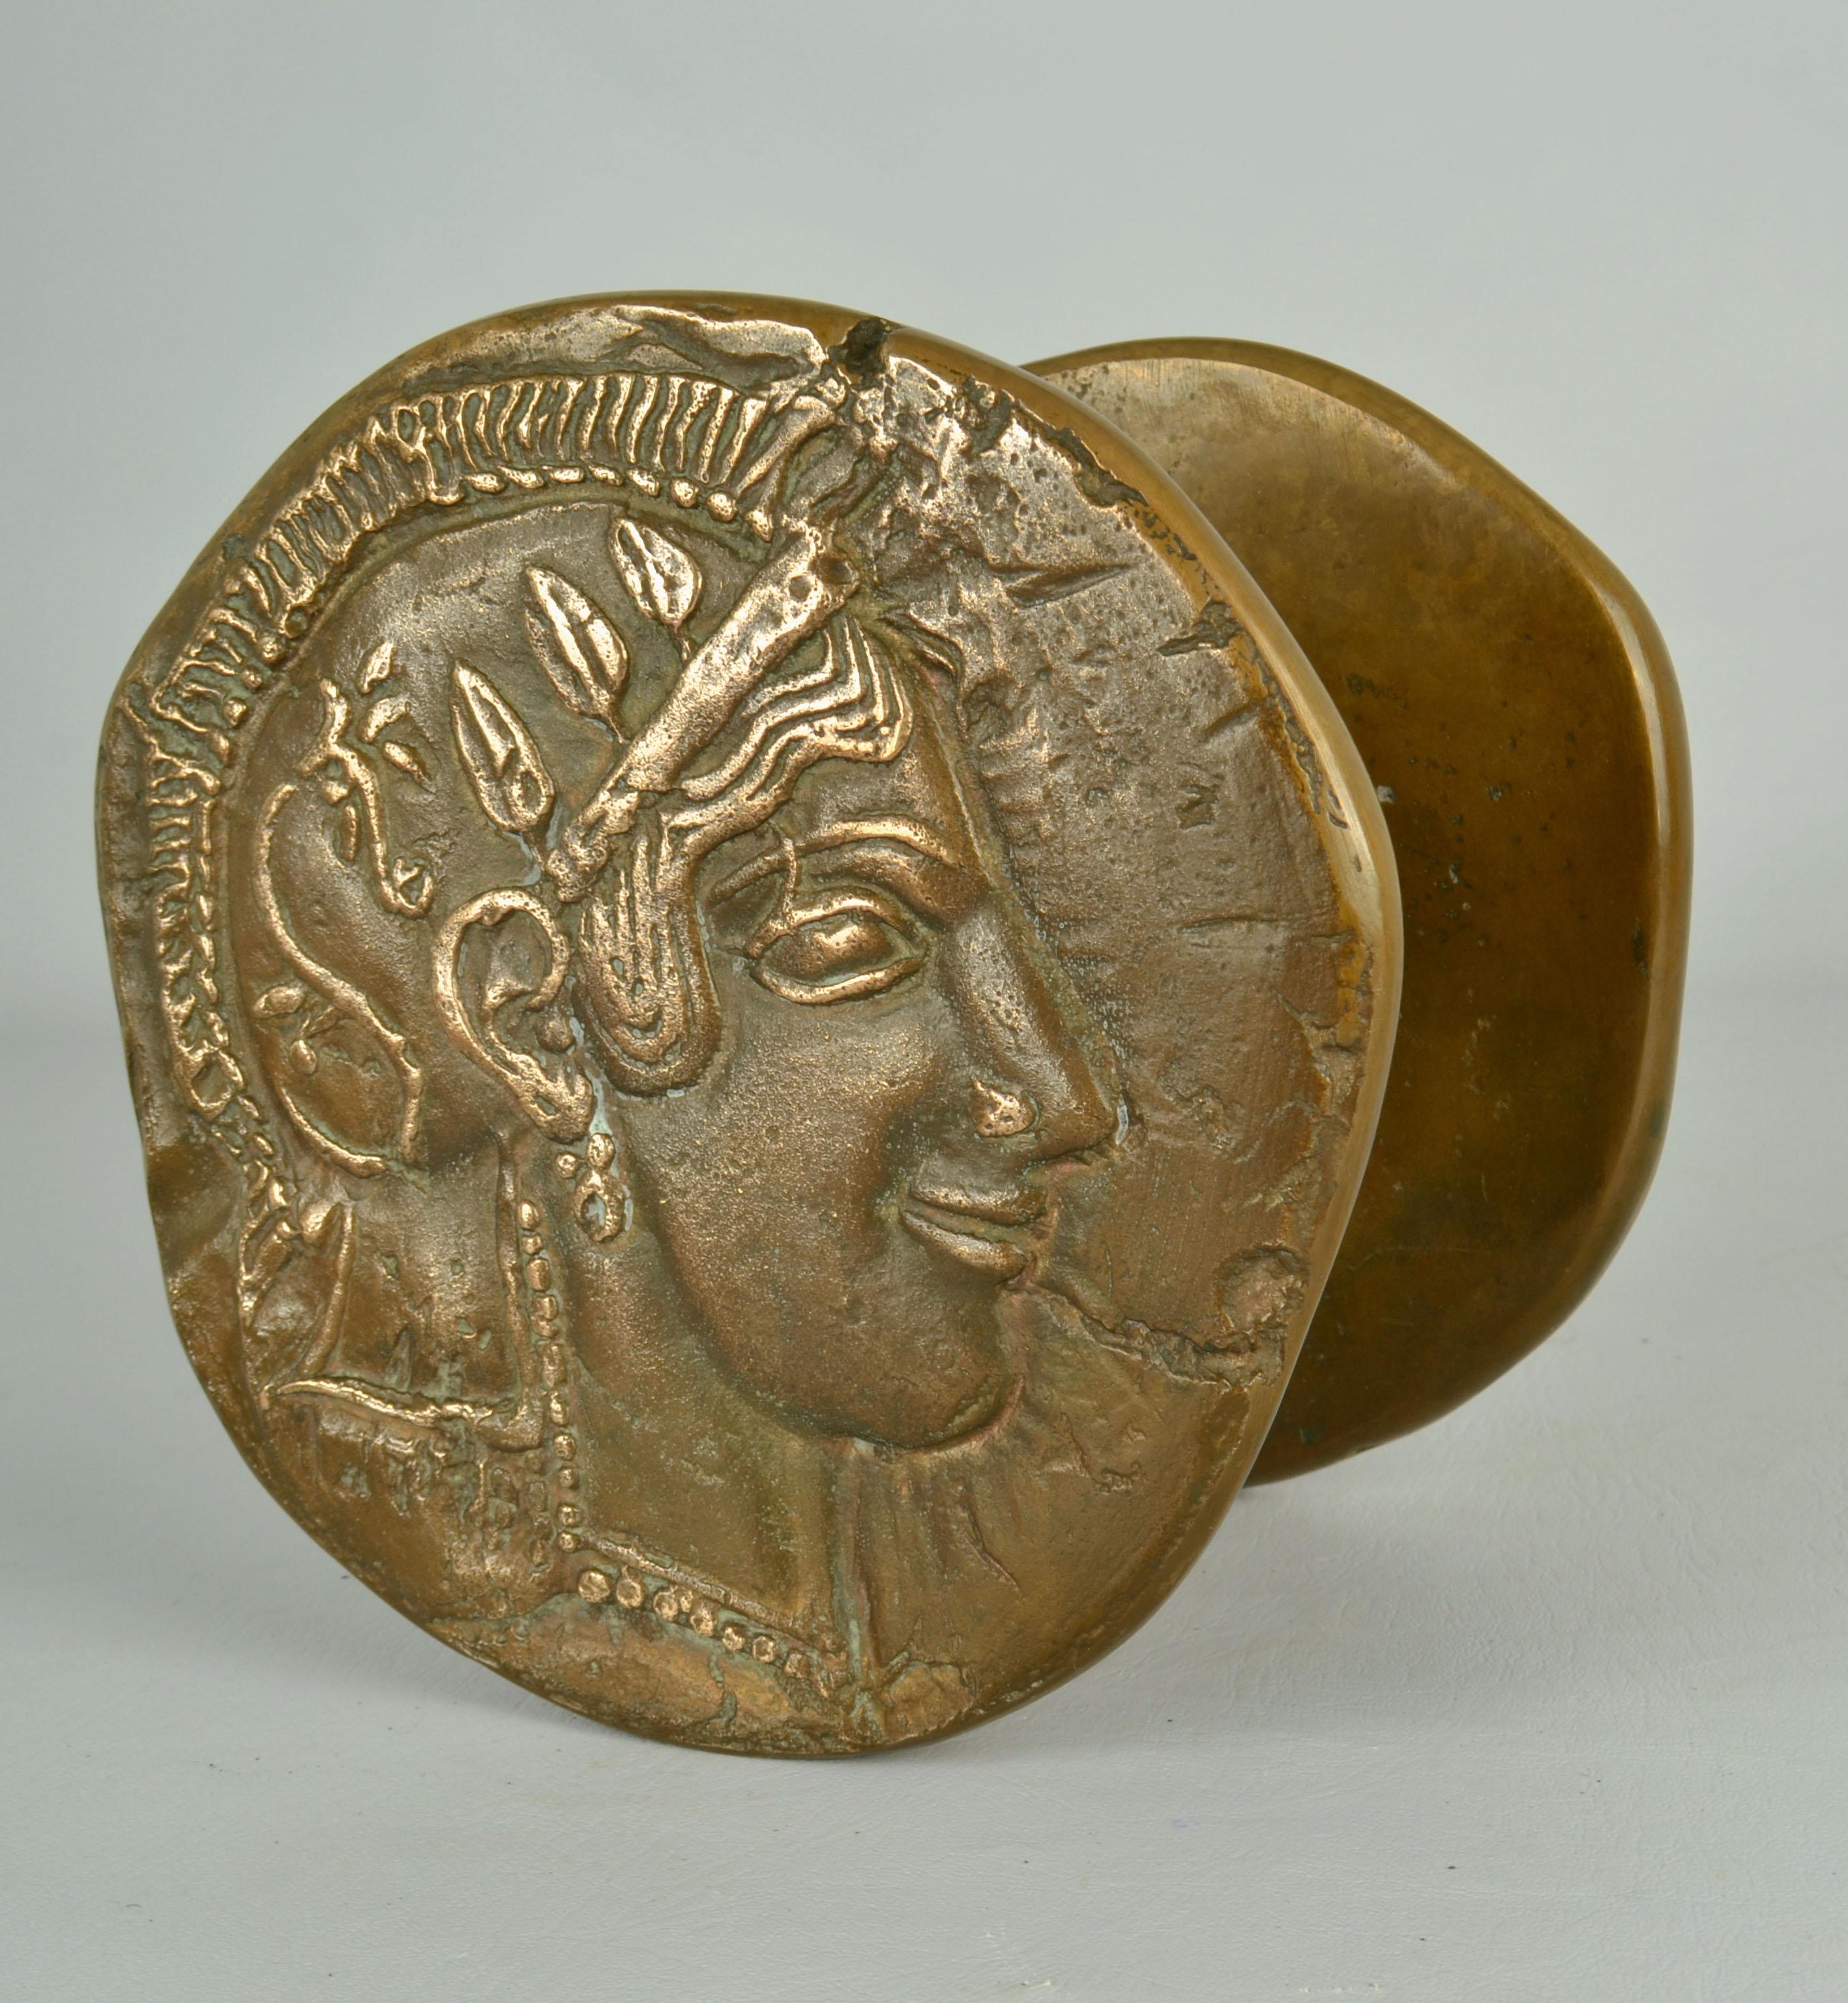 Zwei runde Bronzetürklinken nach antiken griechischen Münzen aus dem 5. Jh. v. Chr., die wahrscheinlich dem behelmten Kopf der Athene mit frontalem Auge und geflügeltem athenischem Helm ähneln. Die in Athen geprägten Münzen gehörten zu den